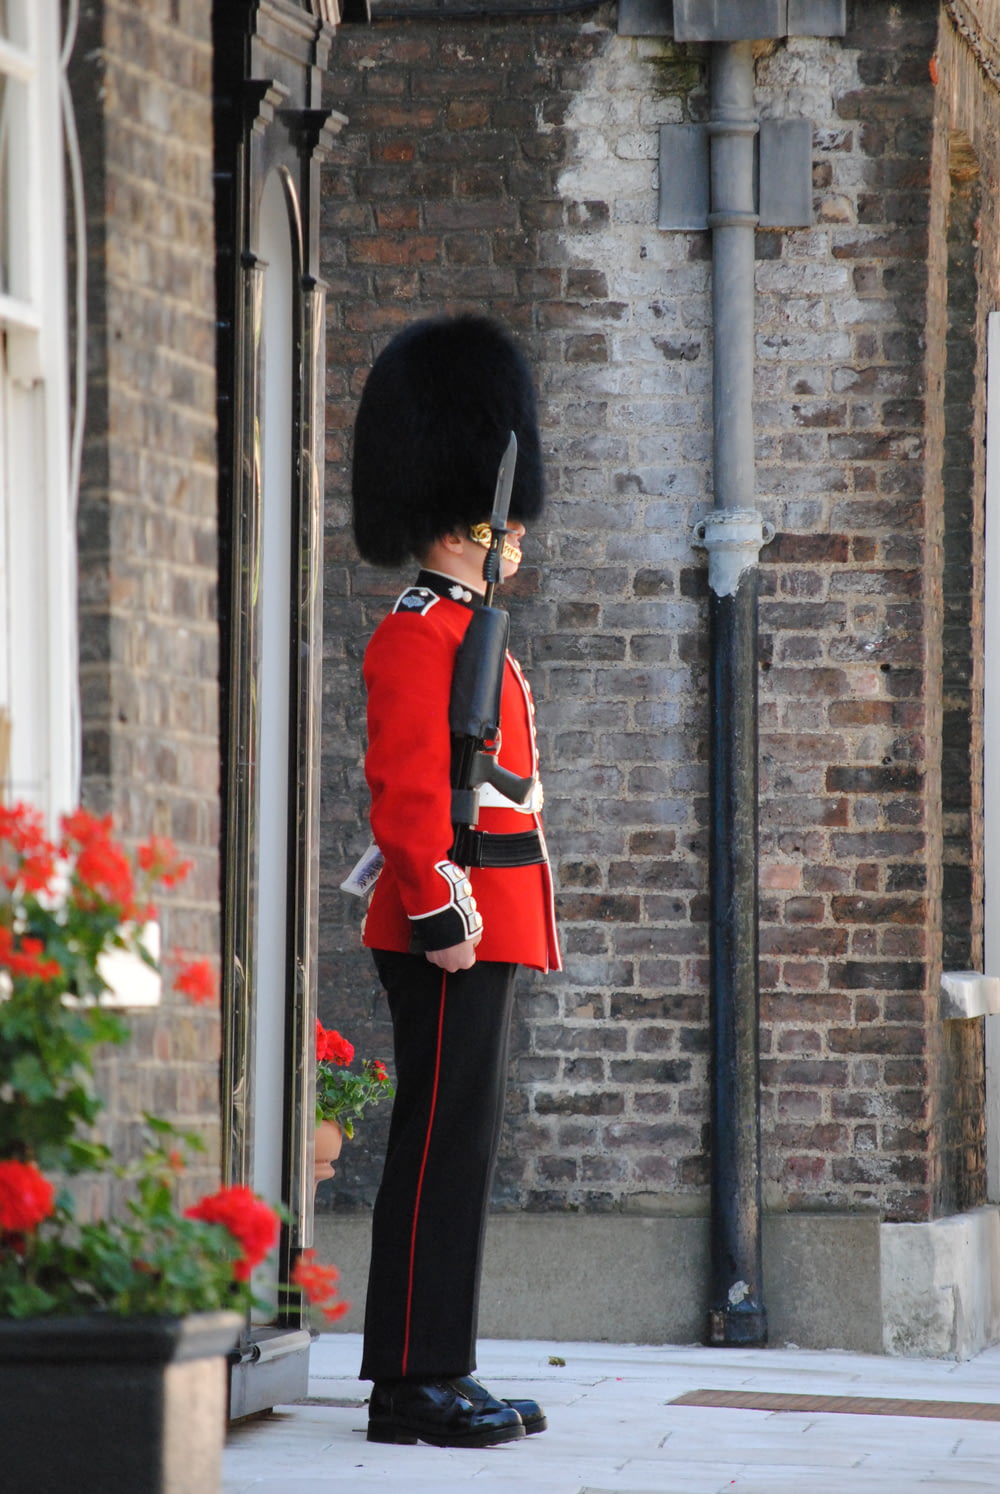 Person in roter und schwarzer Uniform, die tagsüber in der Nähe des schwarzen Metallpostens steht